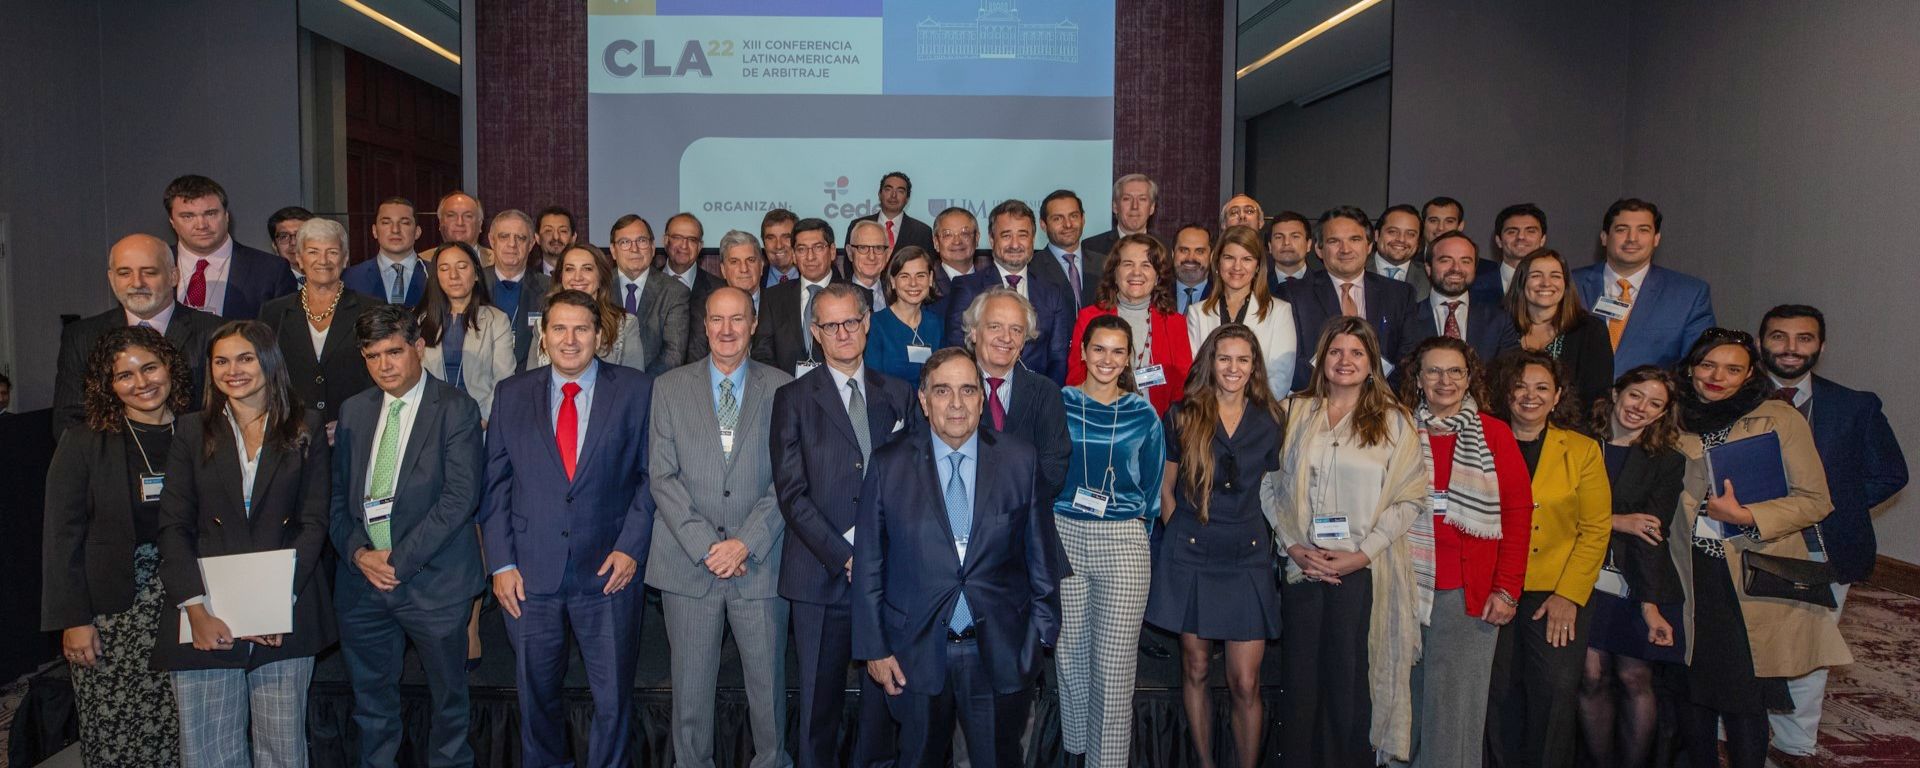 La UM co-organizó la Conferencia Latinoamericana de Arbitraje 2022. En la foto, todos los participantes posan en grupo.